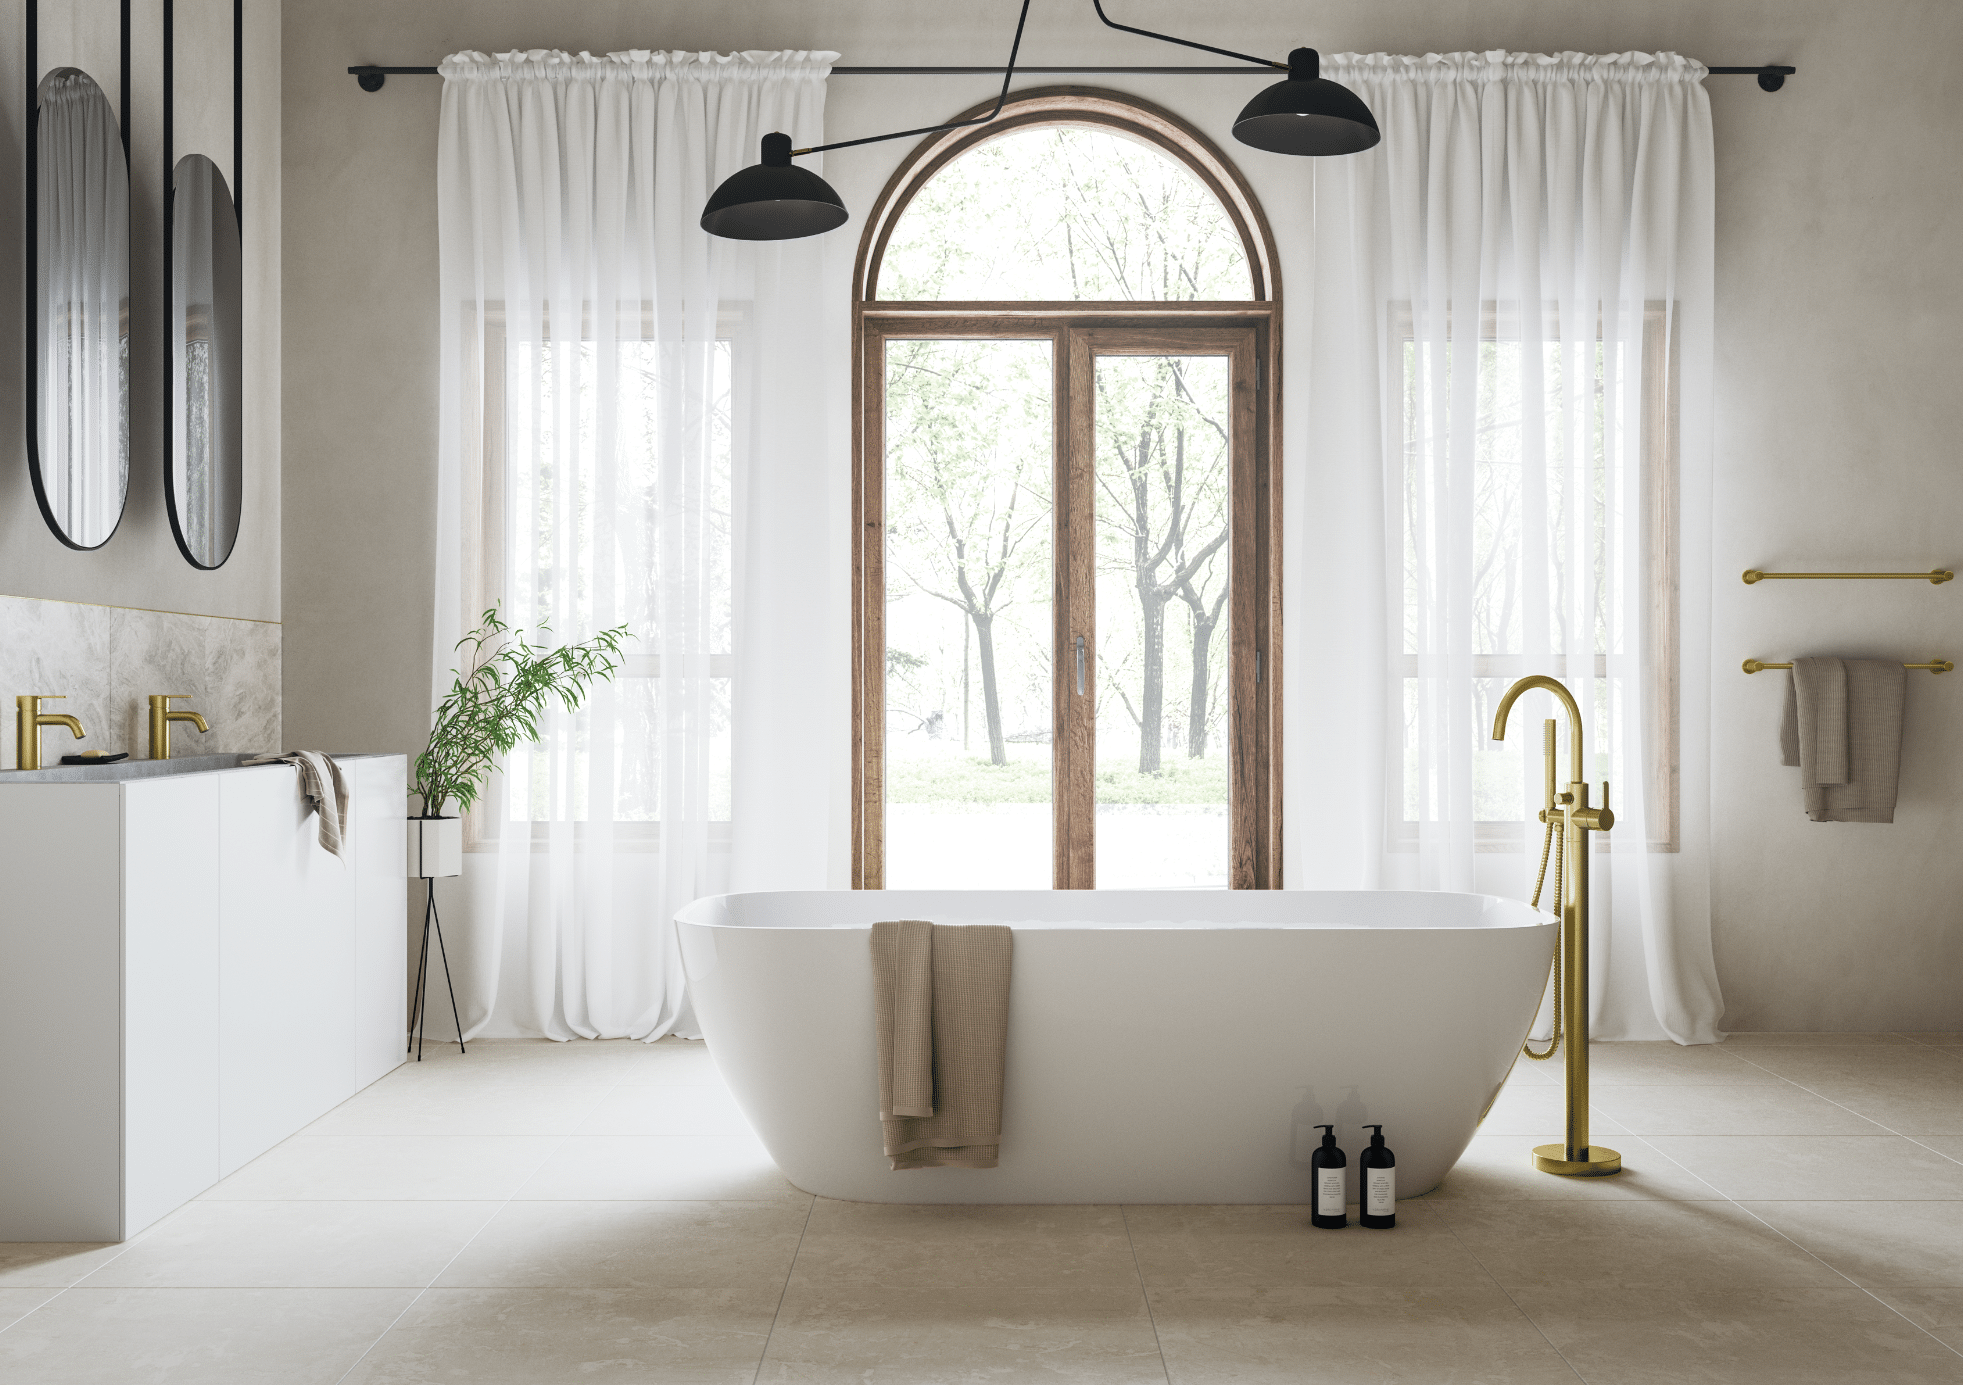 Fliesendorf zeigt ein hell gefliestes Badezimmer mit weissem Doppelwaschtisch, freistehender Badewanne mit goldenen Armaturen und einem Rundbogenfenster.